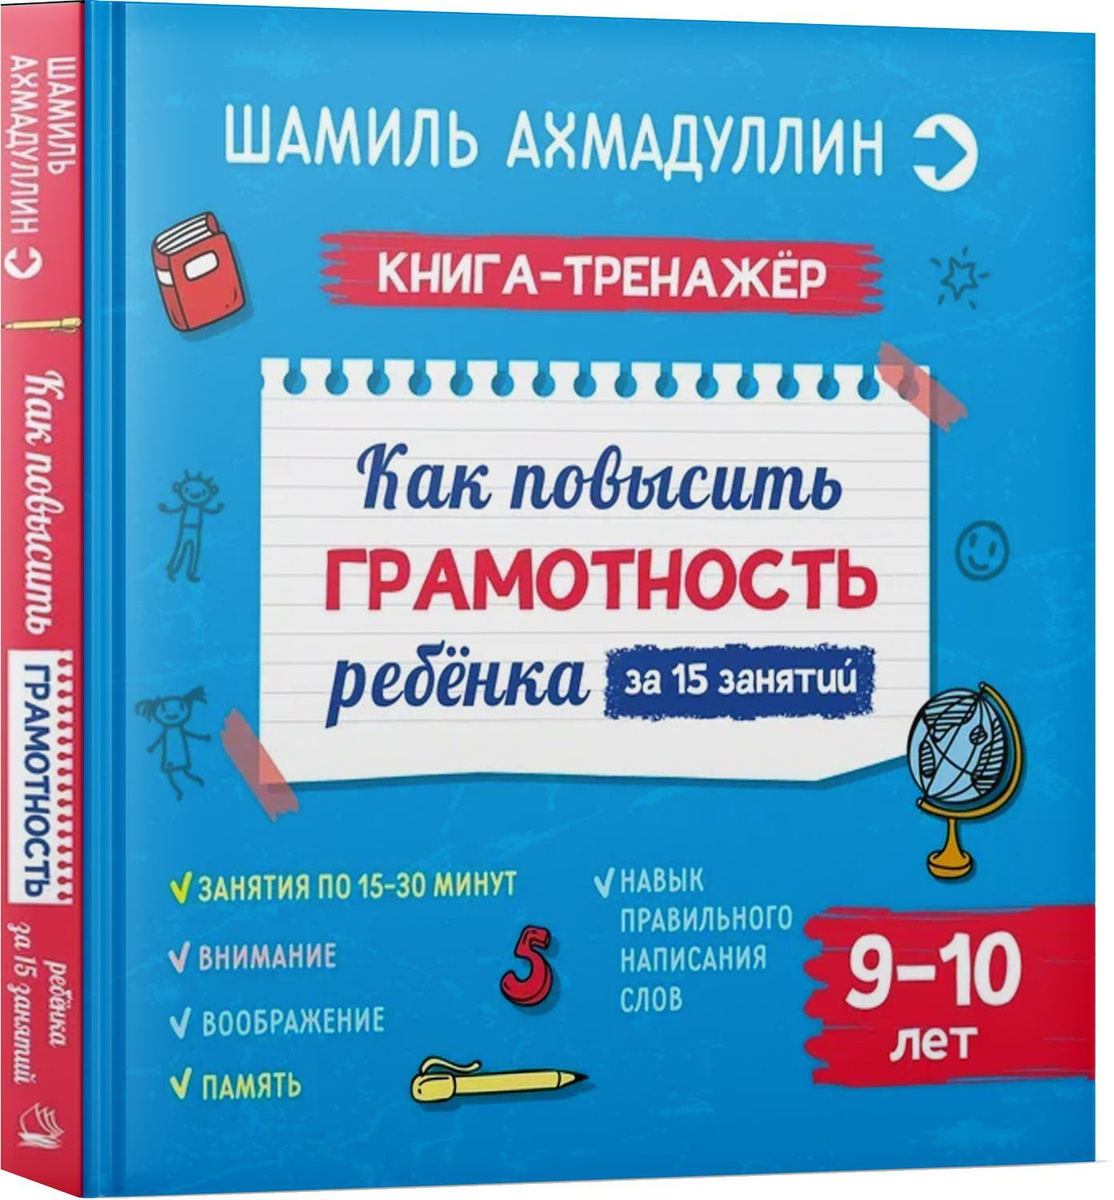 Как повысить грамотность ребенка. Книга-тренажер 9-10 лет | Ахмадуллин Шамиль Тагирович  #1